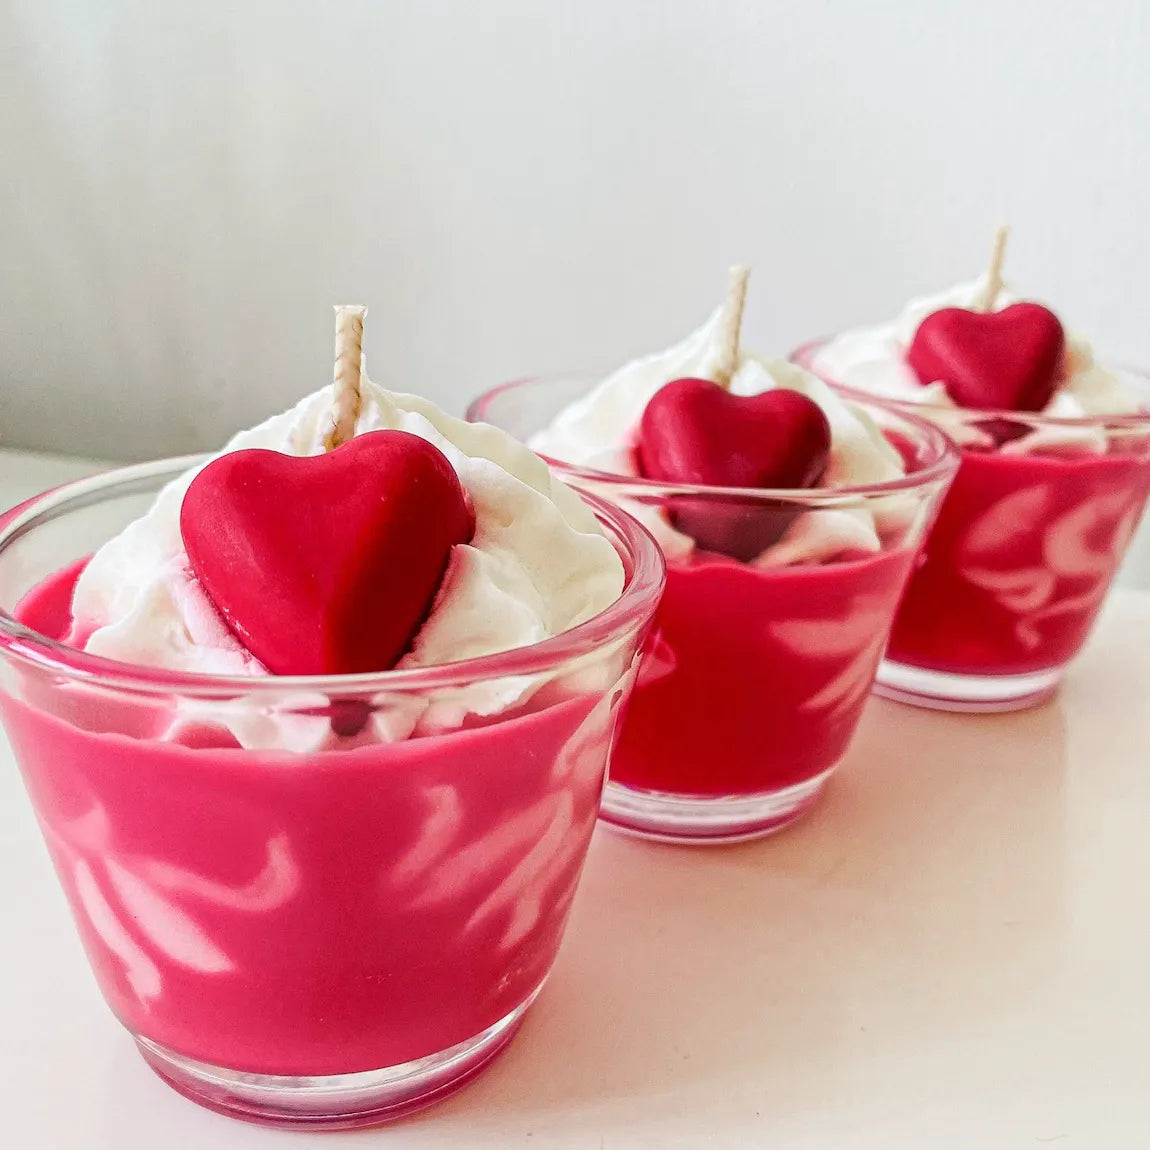 Bougie gourmande artisanale à la cerise - 25h - Les Fées Cherry